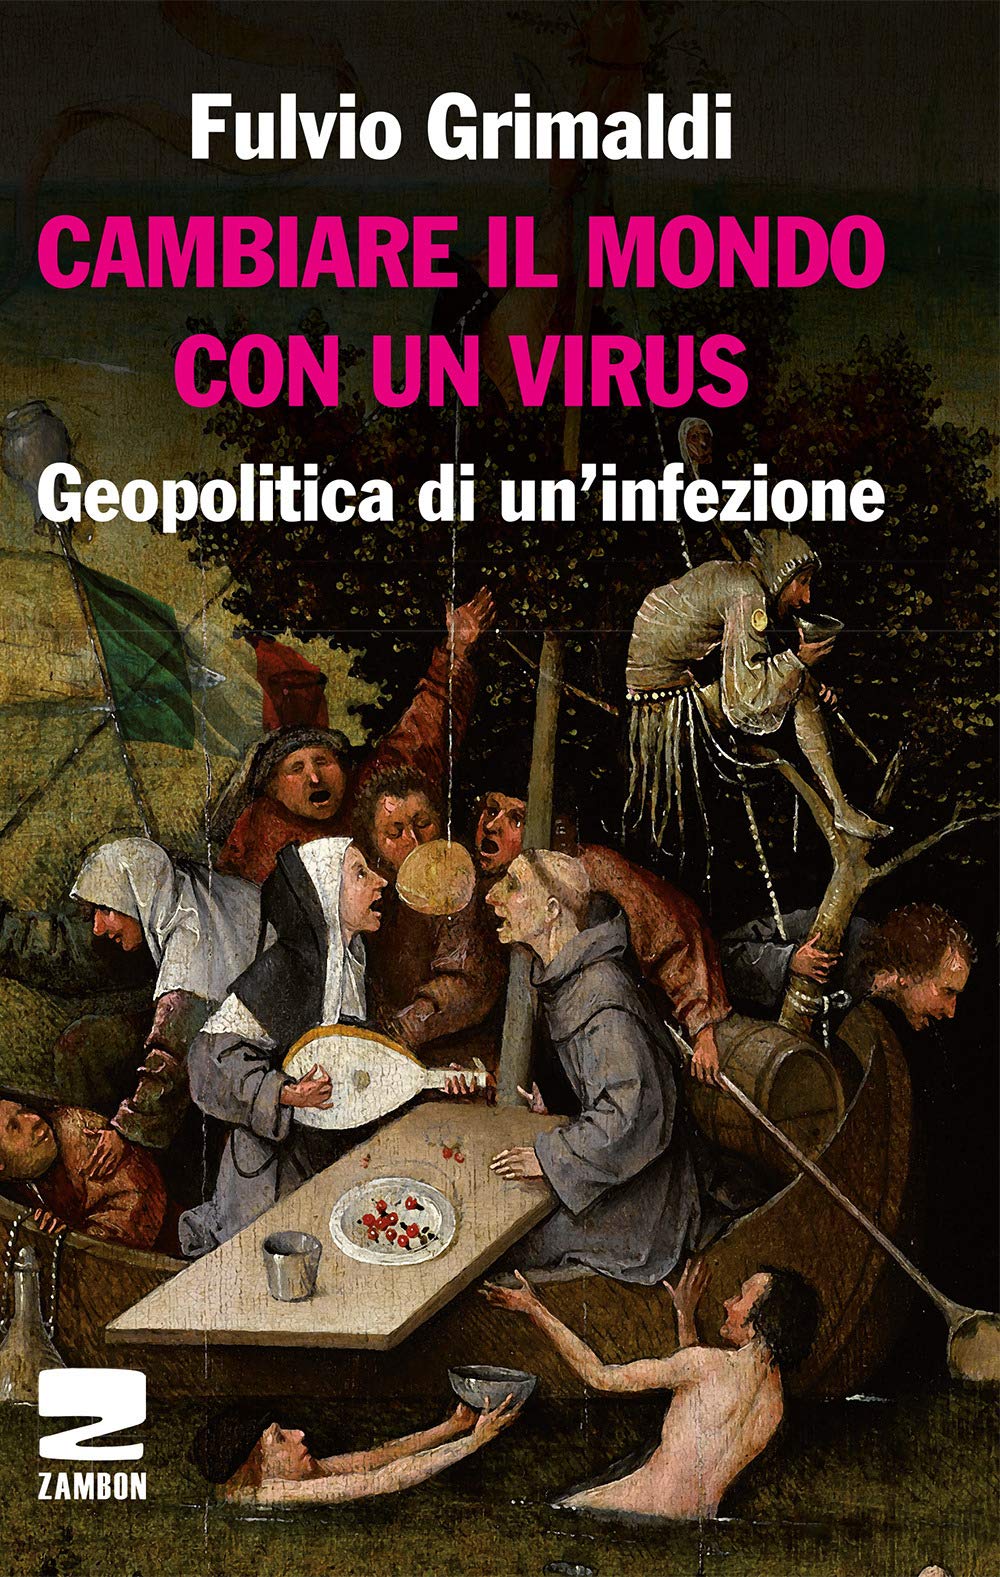 CAMBIARE IL MONDO CON UN VIRUS – Fulvio Grimaldi